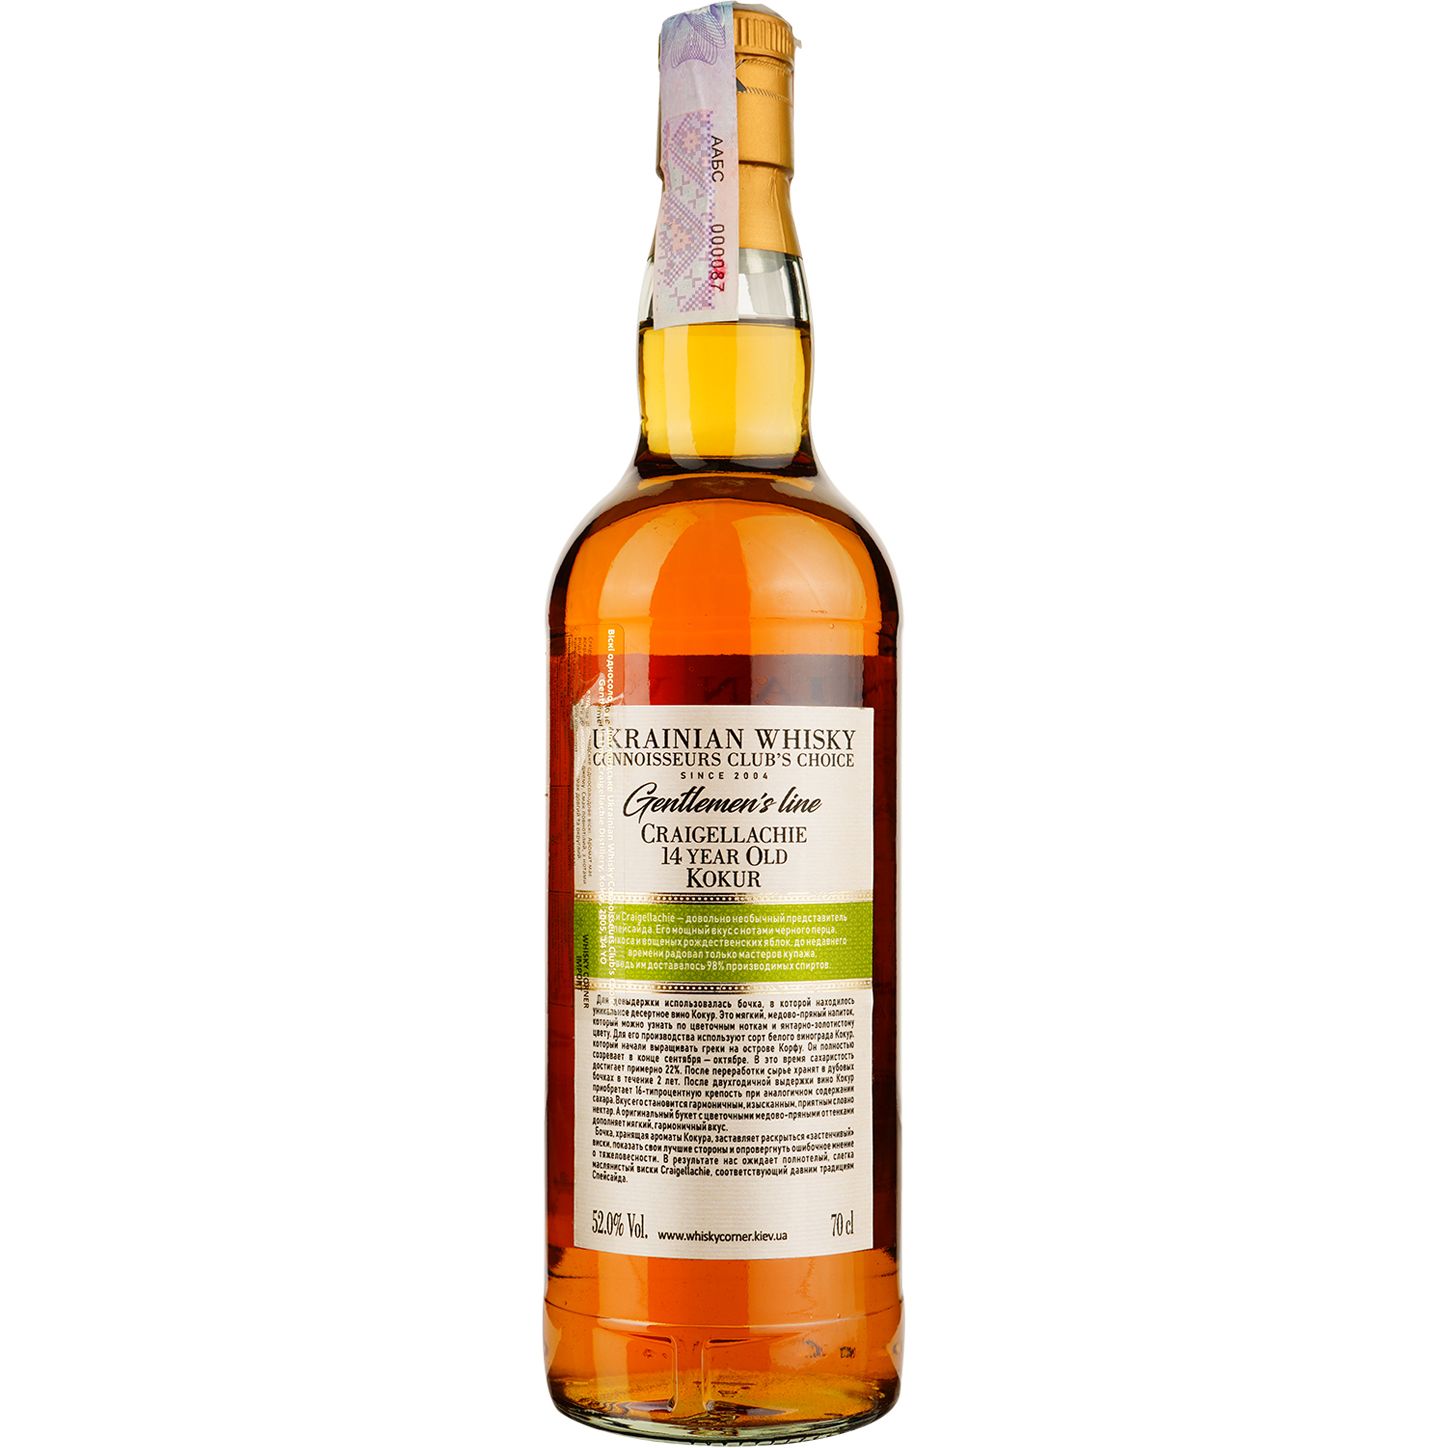 Віскі Craigellachie 14 Years Old Kokur Single Malt Scotch Whisky, у подарунковій упаковці, 52%, 0,7 л - фото 4